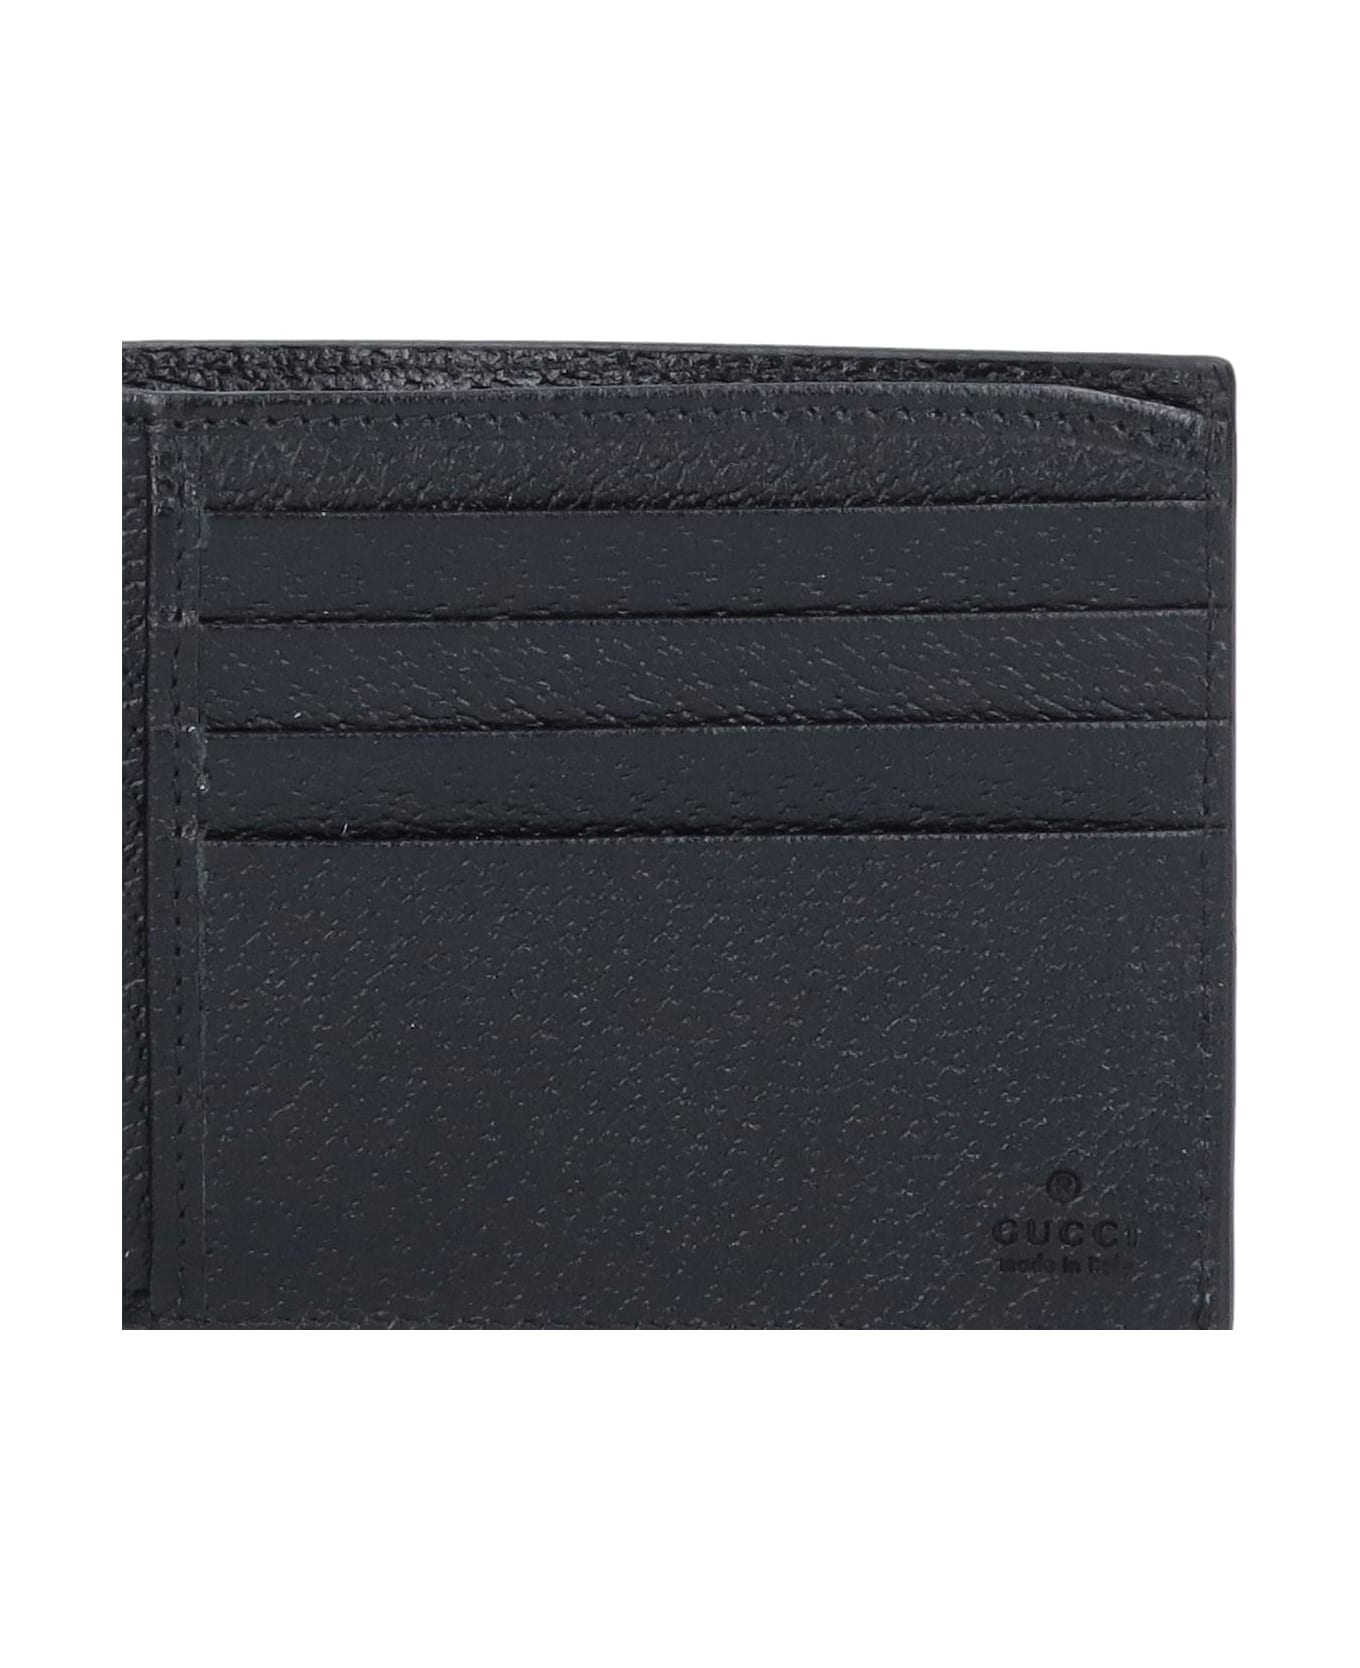 Gucci 'gg-marmont' Bi-fold Wallet - Black